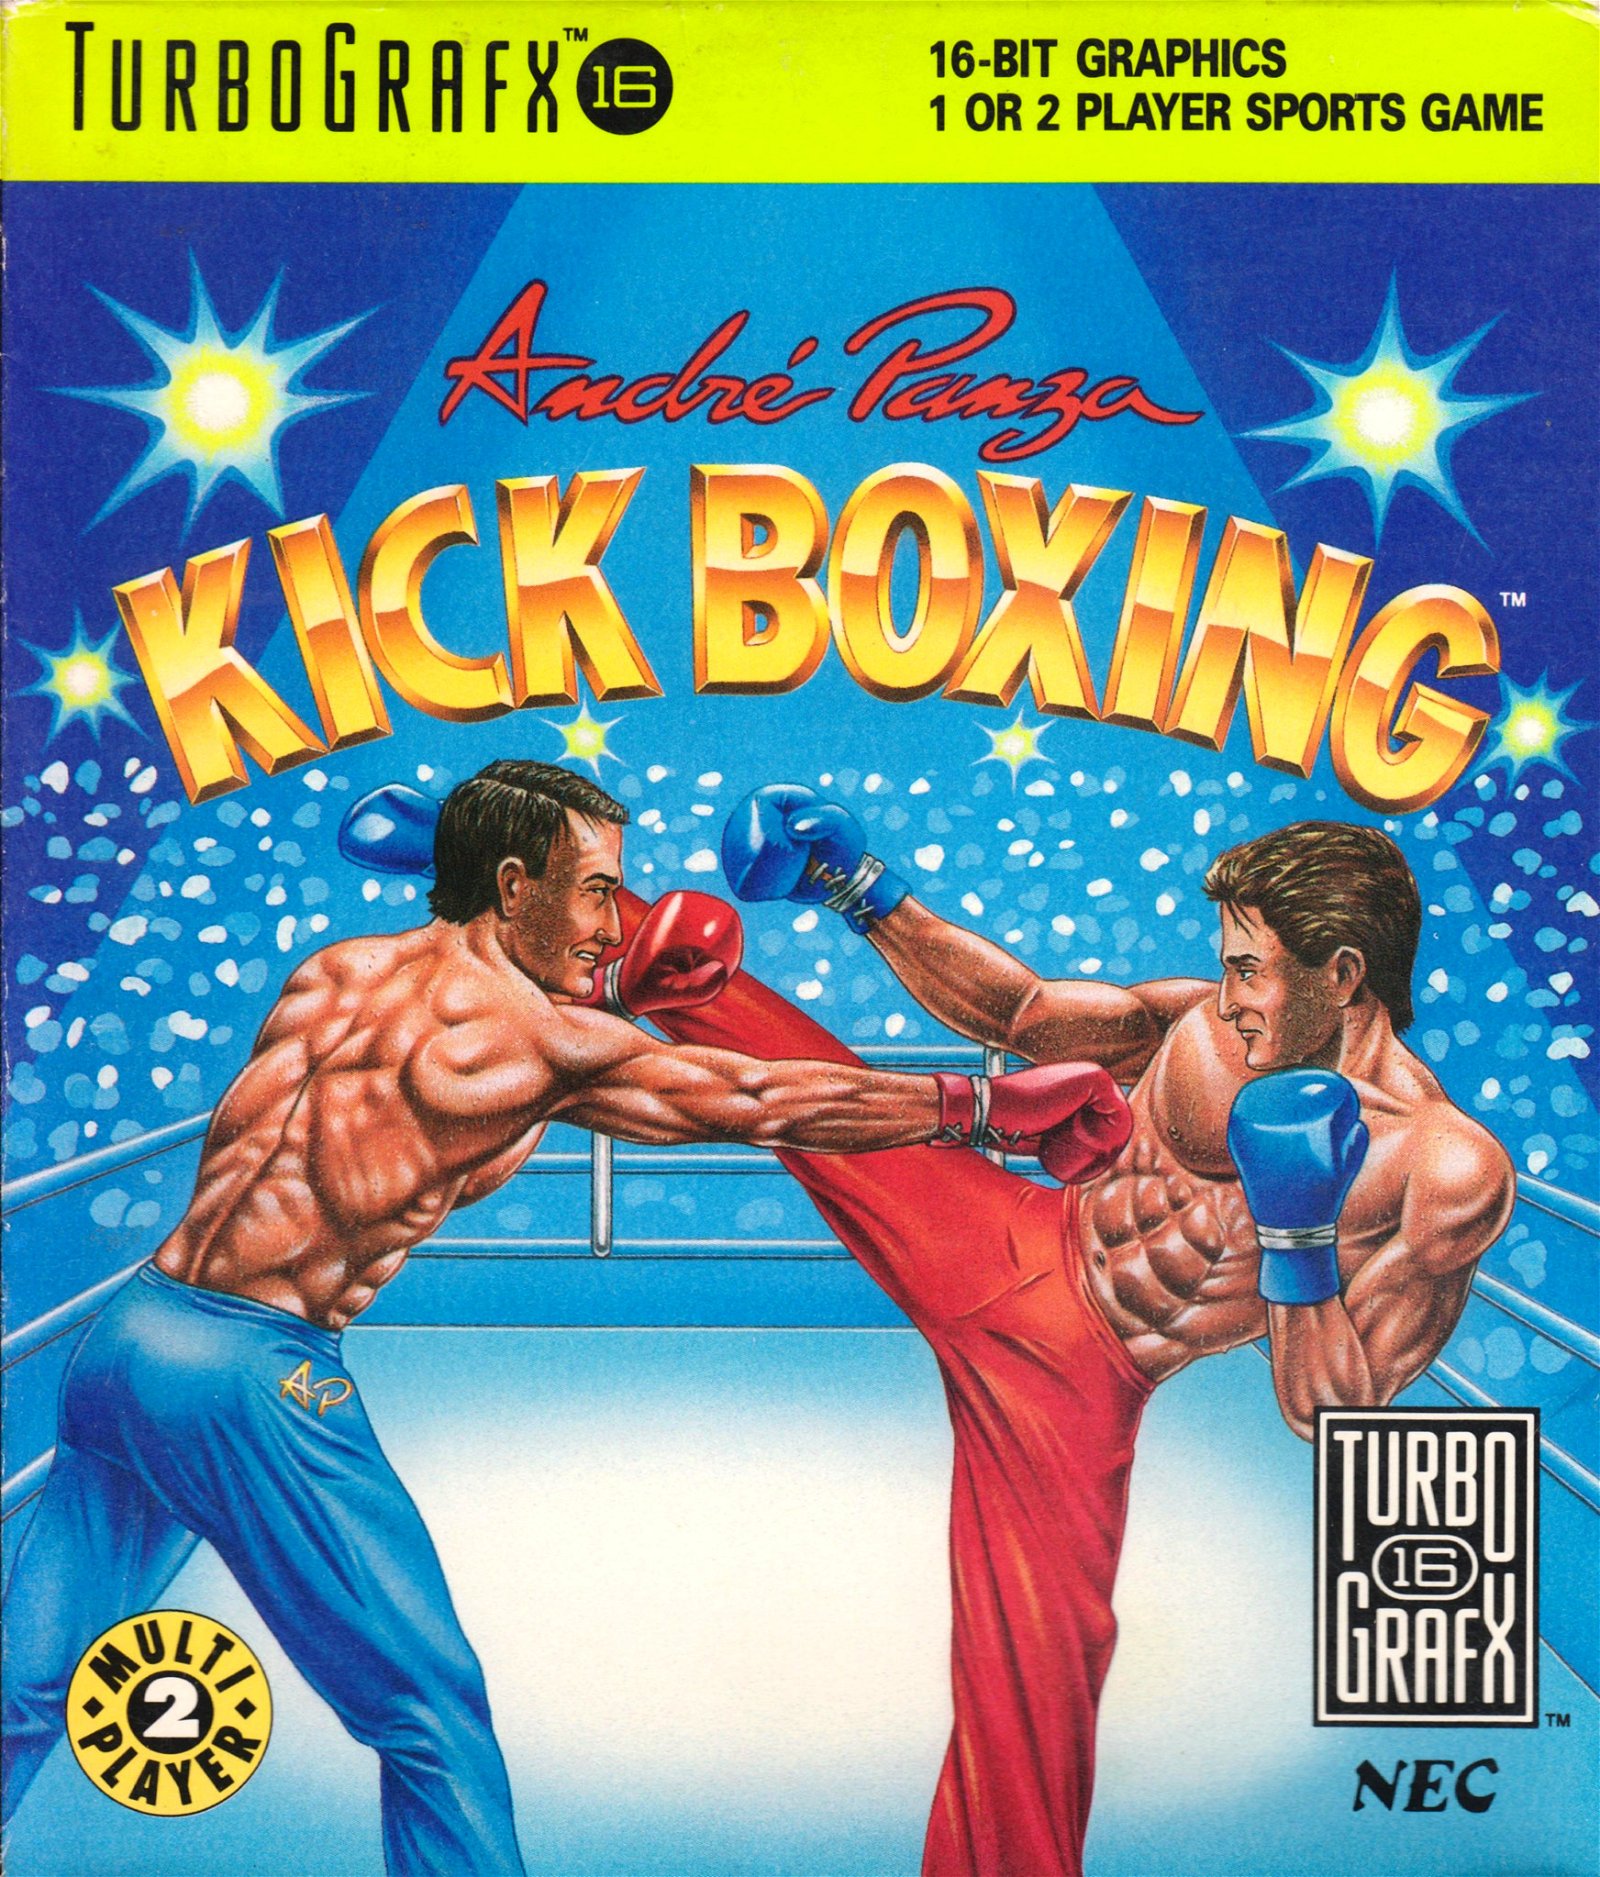 Image of Andre Panza Kick Boxing